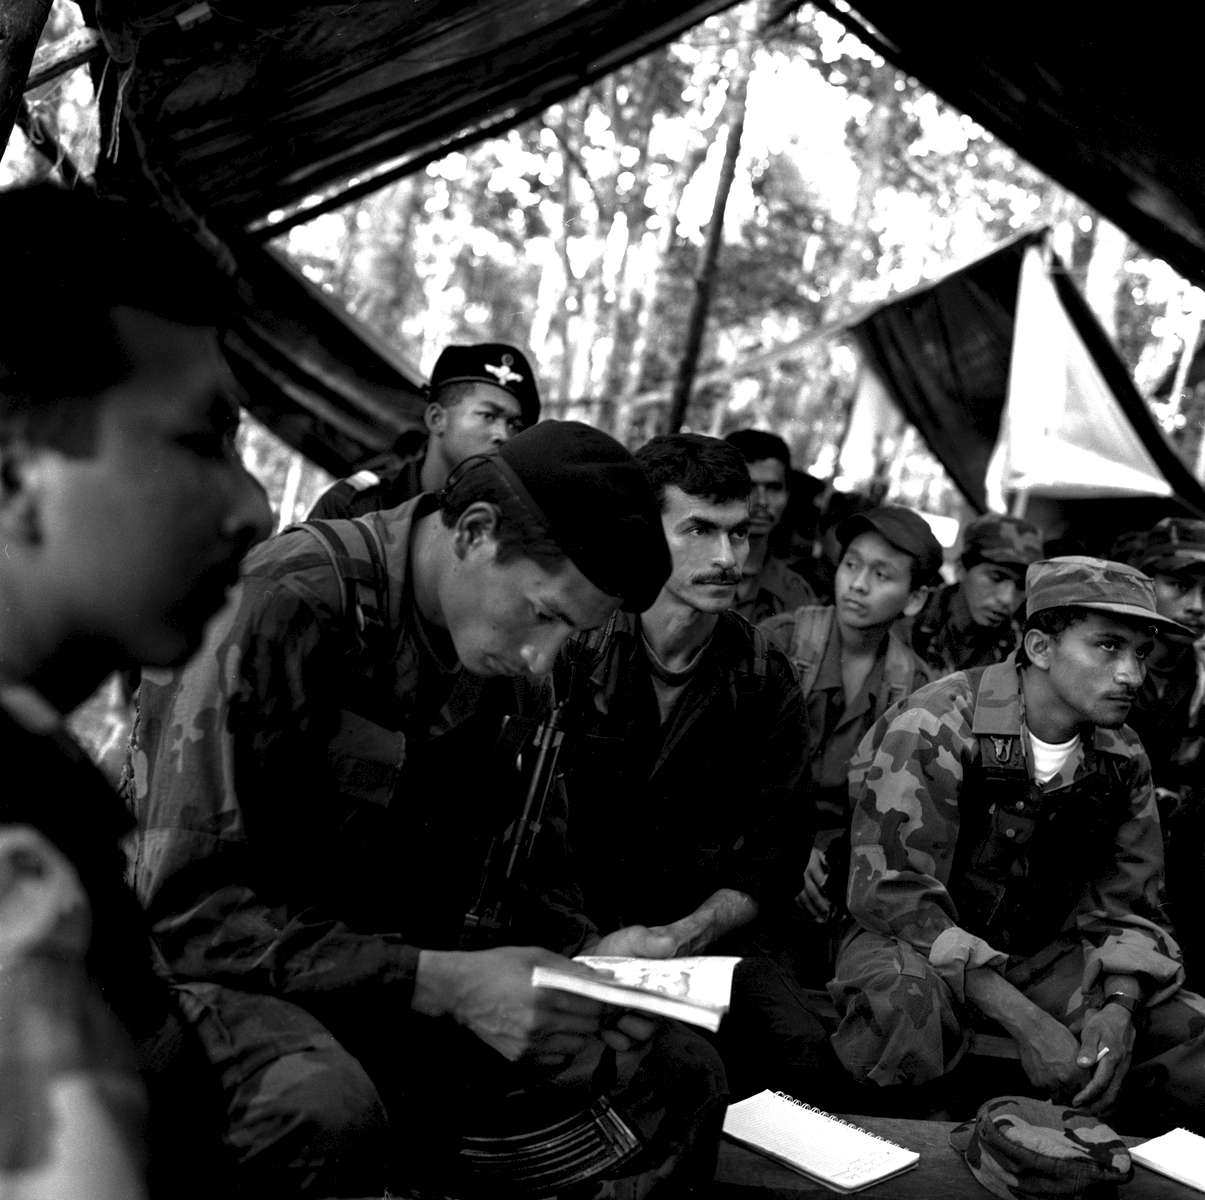 FARC counterespionage jungle classroom, Rio Caguan region, Colombia, 2001